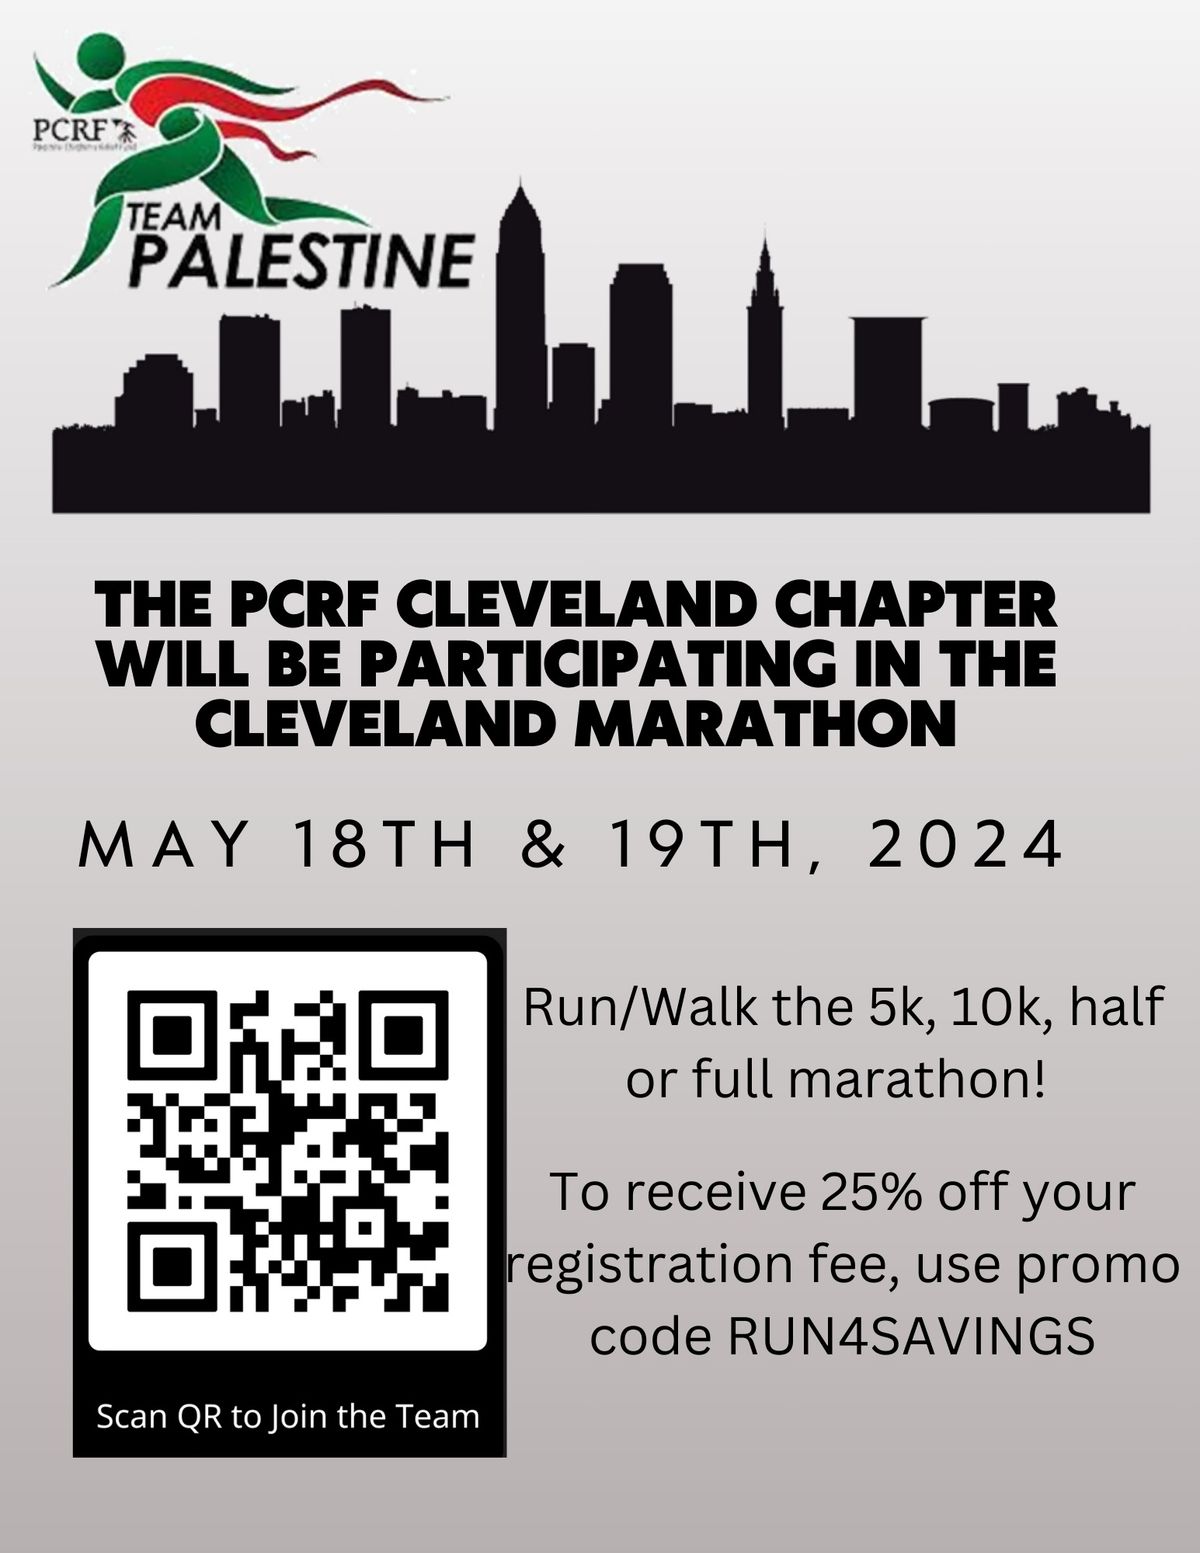 Team Palestine 4 PCRF - Cleveland Marathon 2024